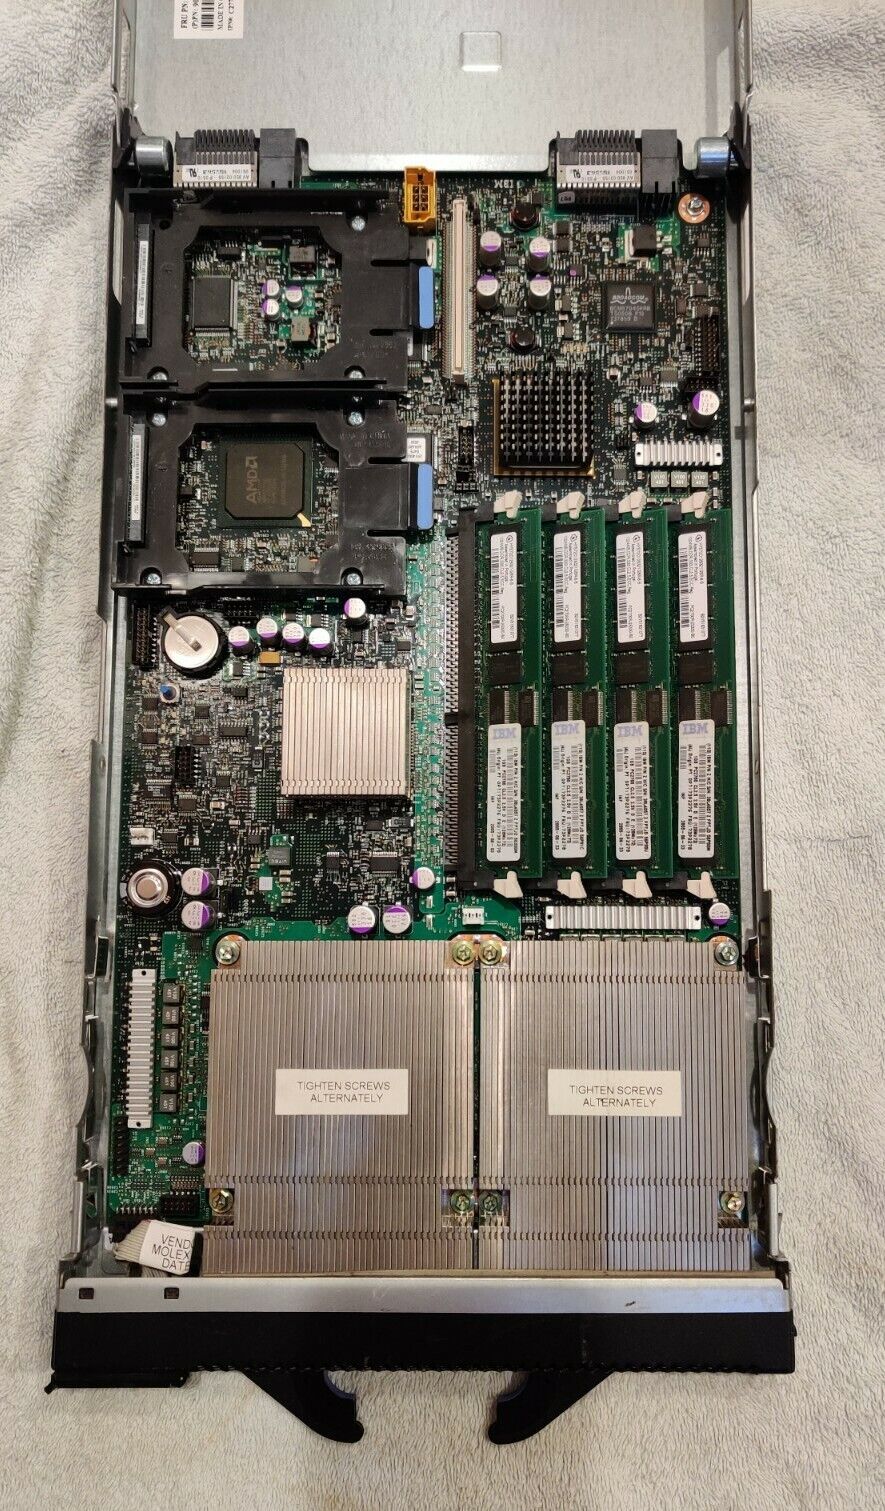 IBM Bladecenter JS20 Blade - Dual Processor (PowerPC), 4GB RAM, NO disk